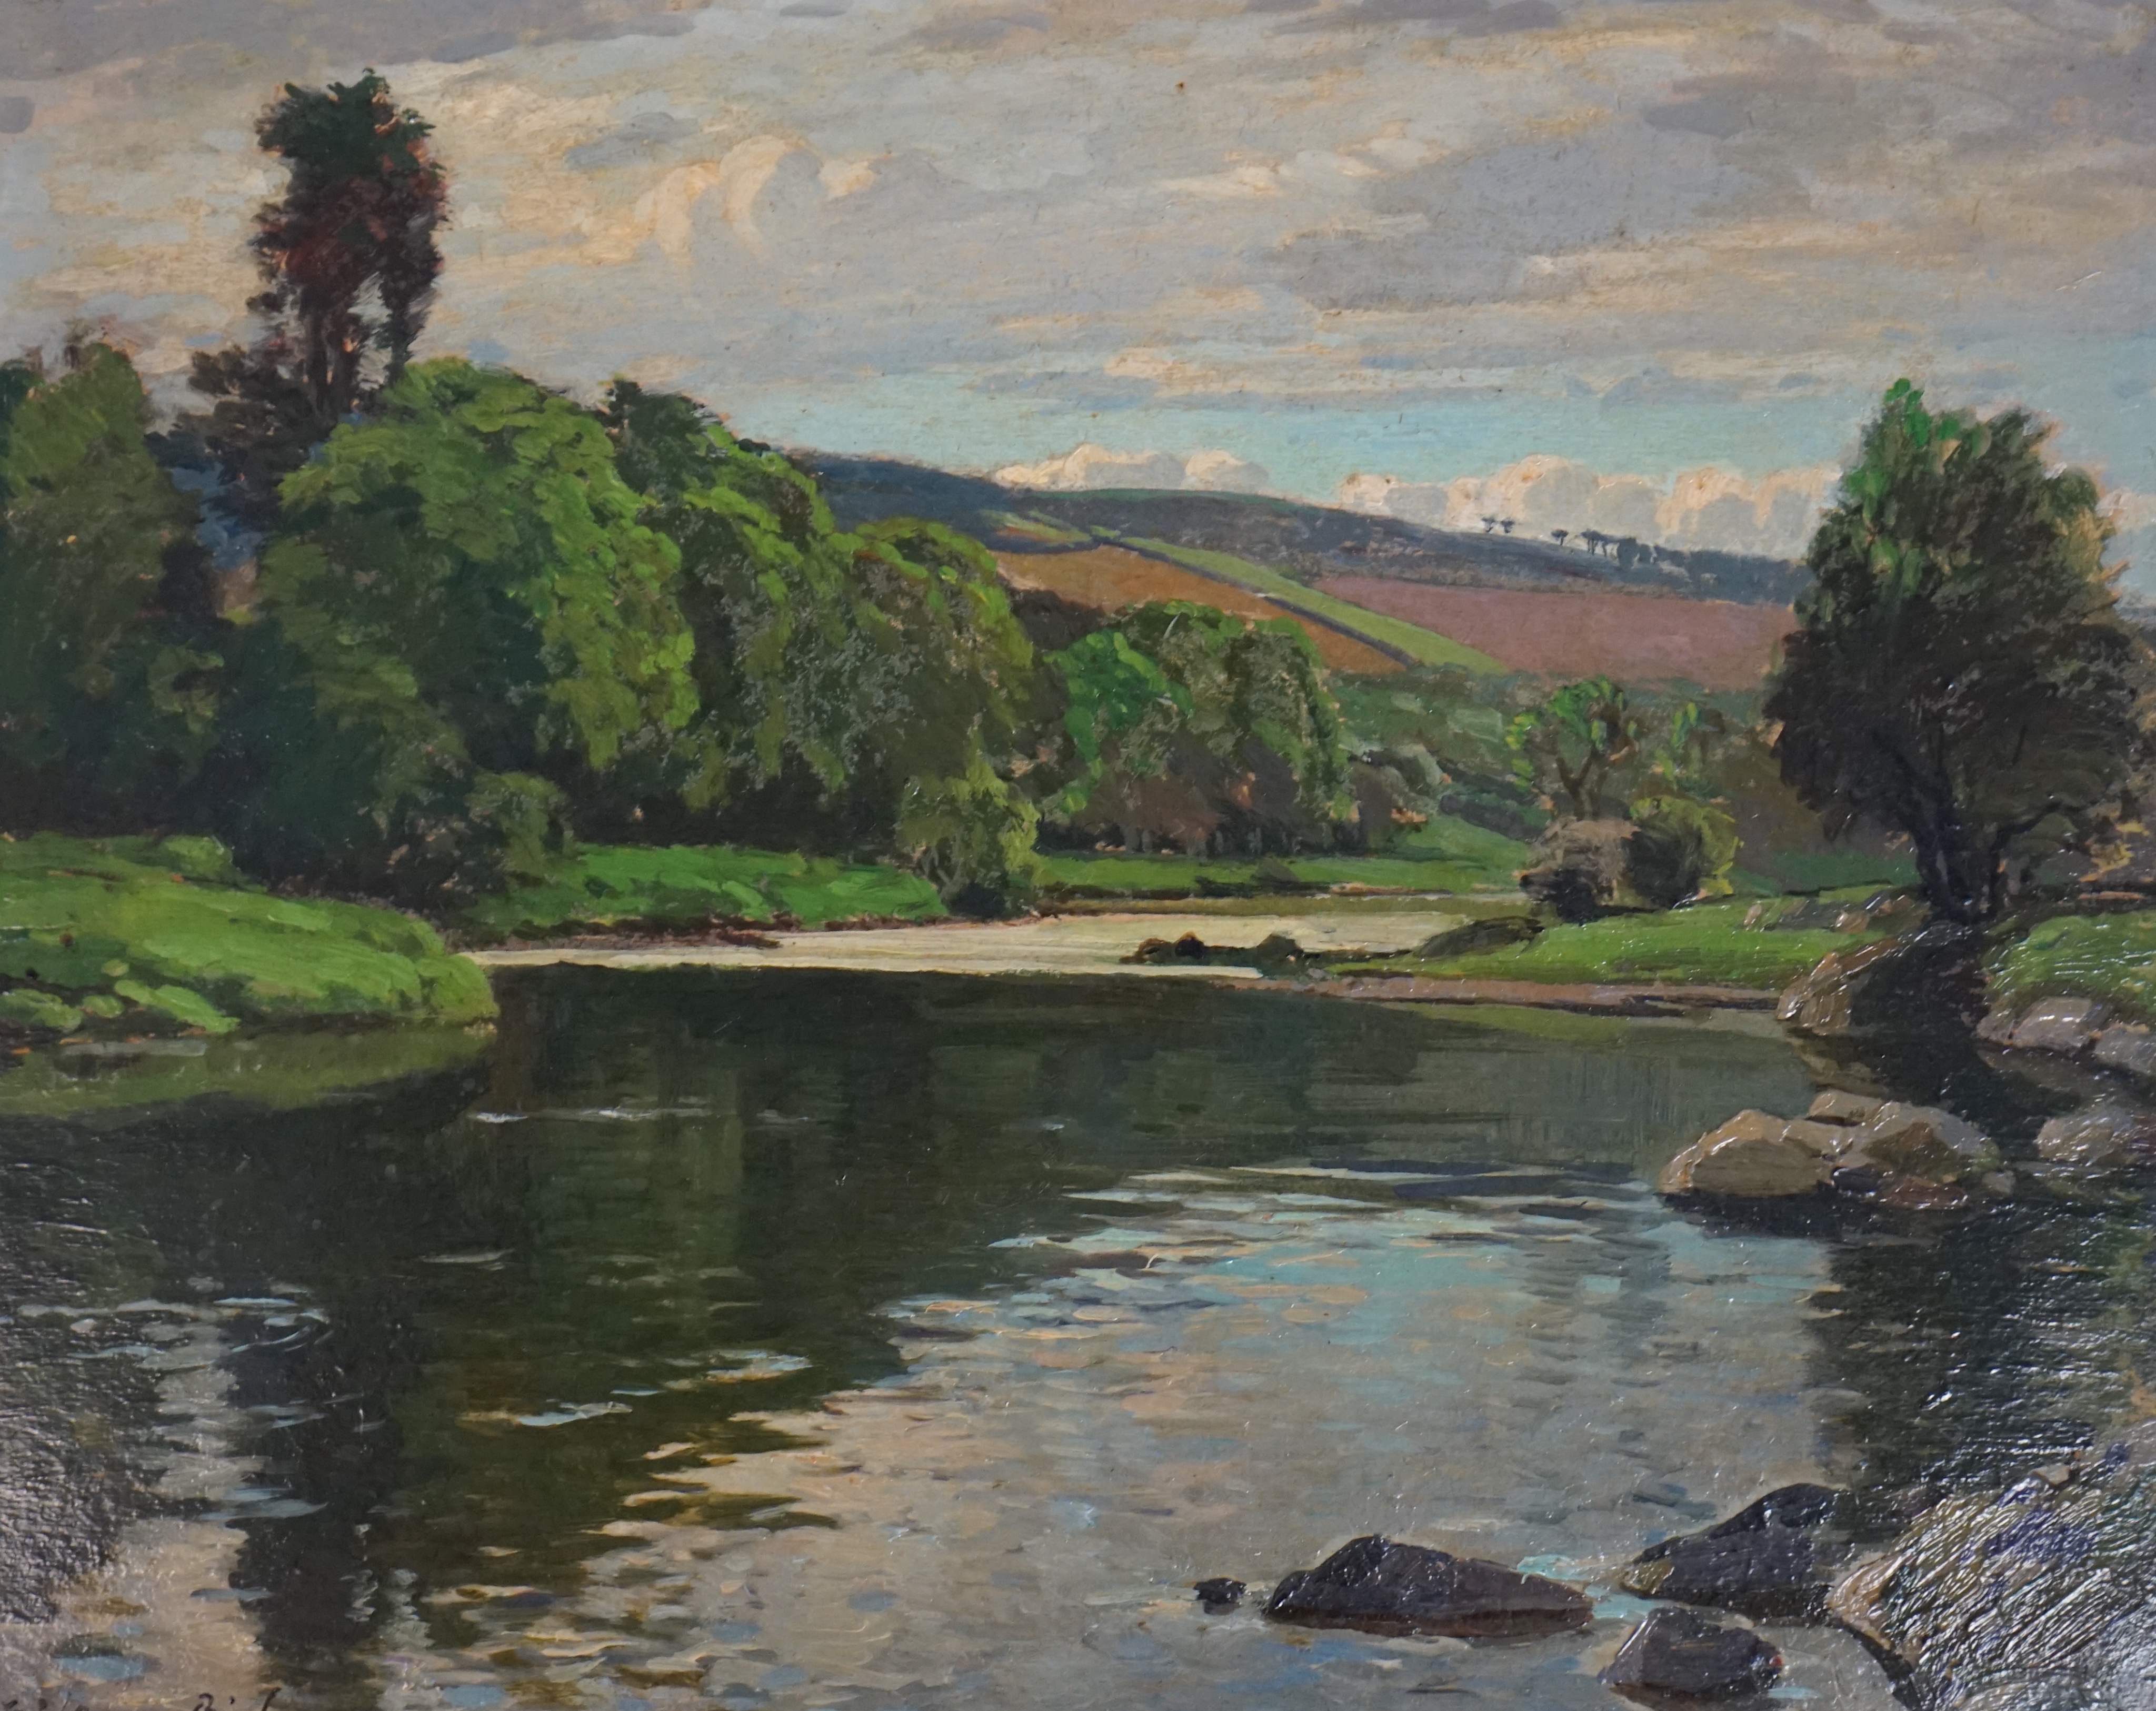 Samuel John Lamorna Birch (1869-1955), Devonshire River Landscape, oil on board, 32 x 39cm